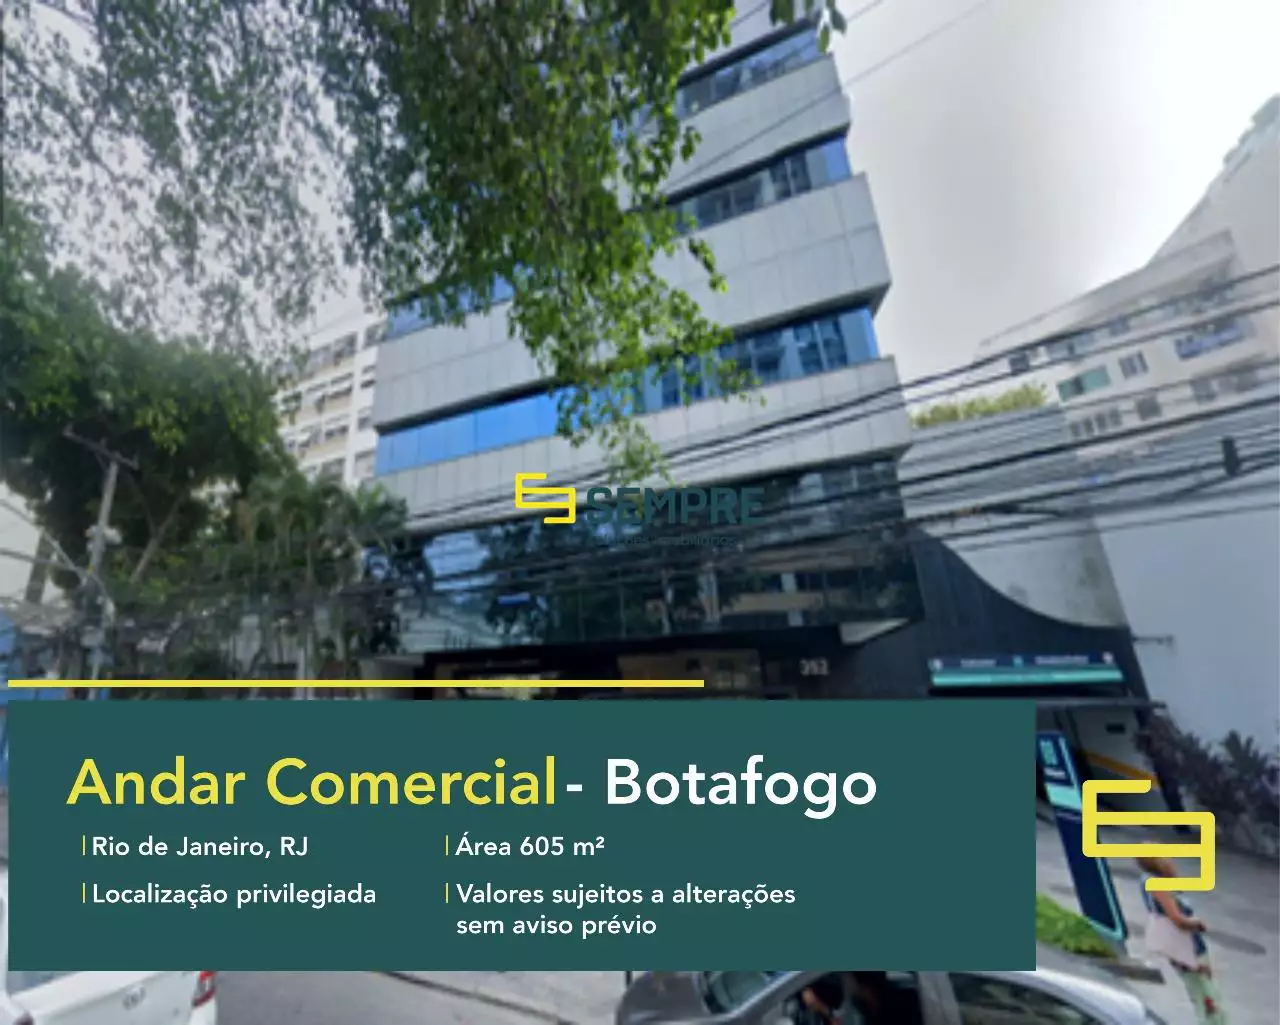 Andar corporativo para locação no Botafogo Trade Center - RJ, excelente localização. O estabelecimento comercial conta com área de 605 m².